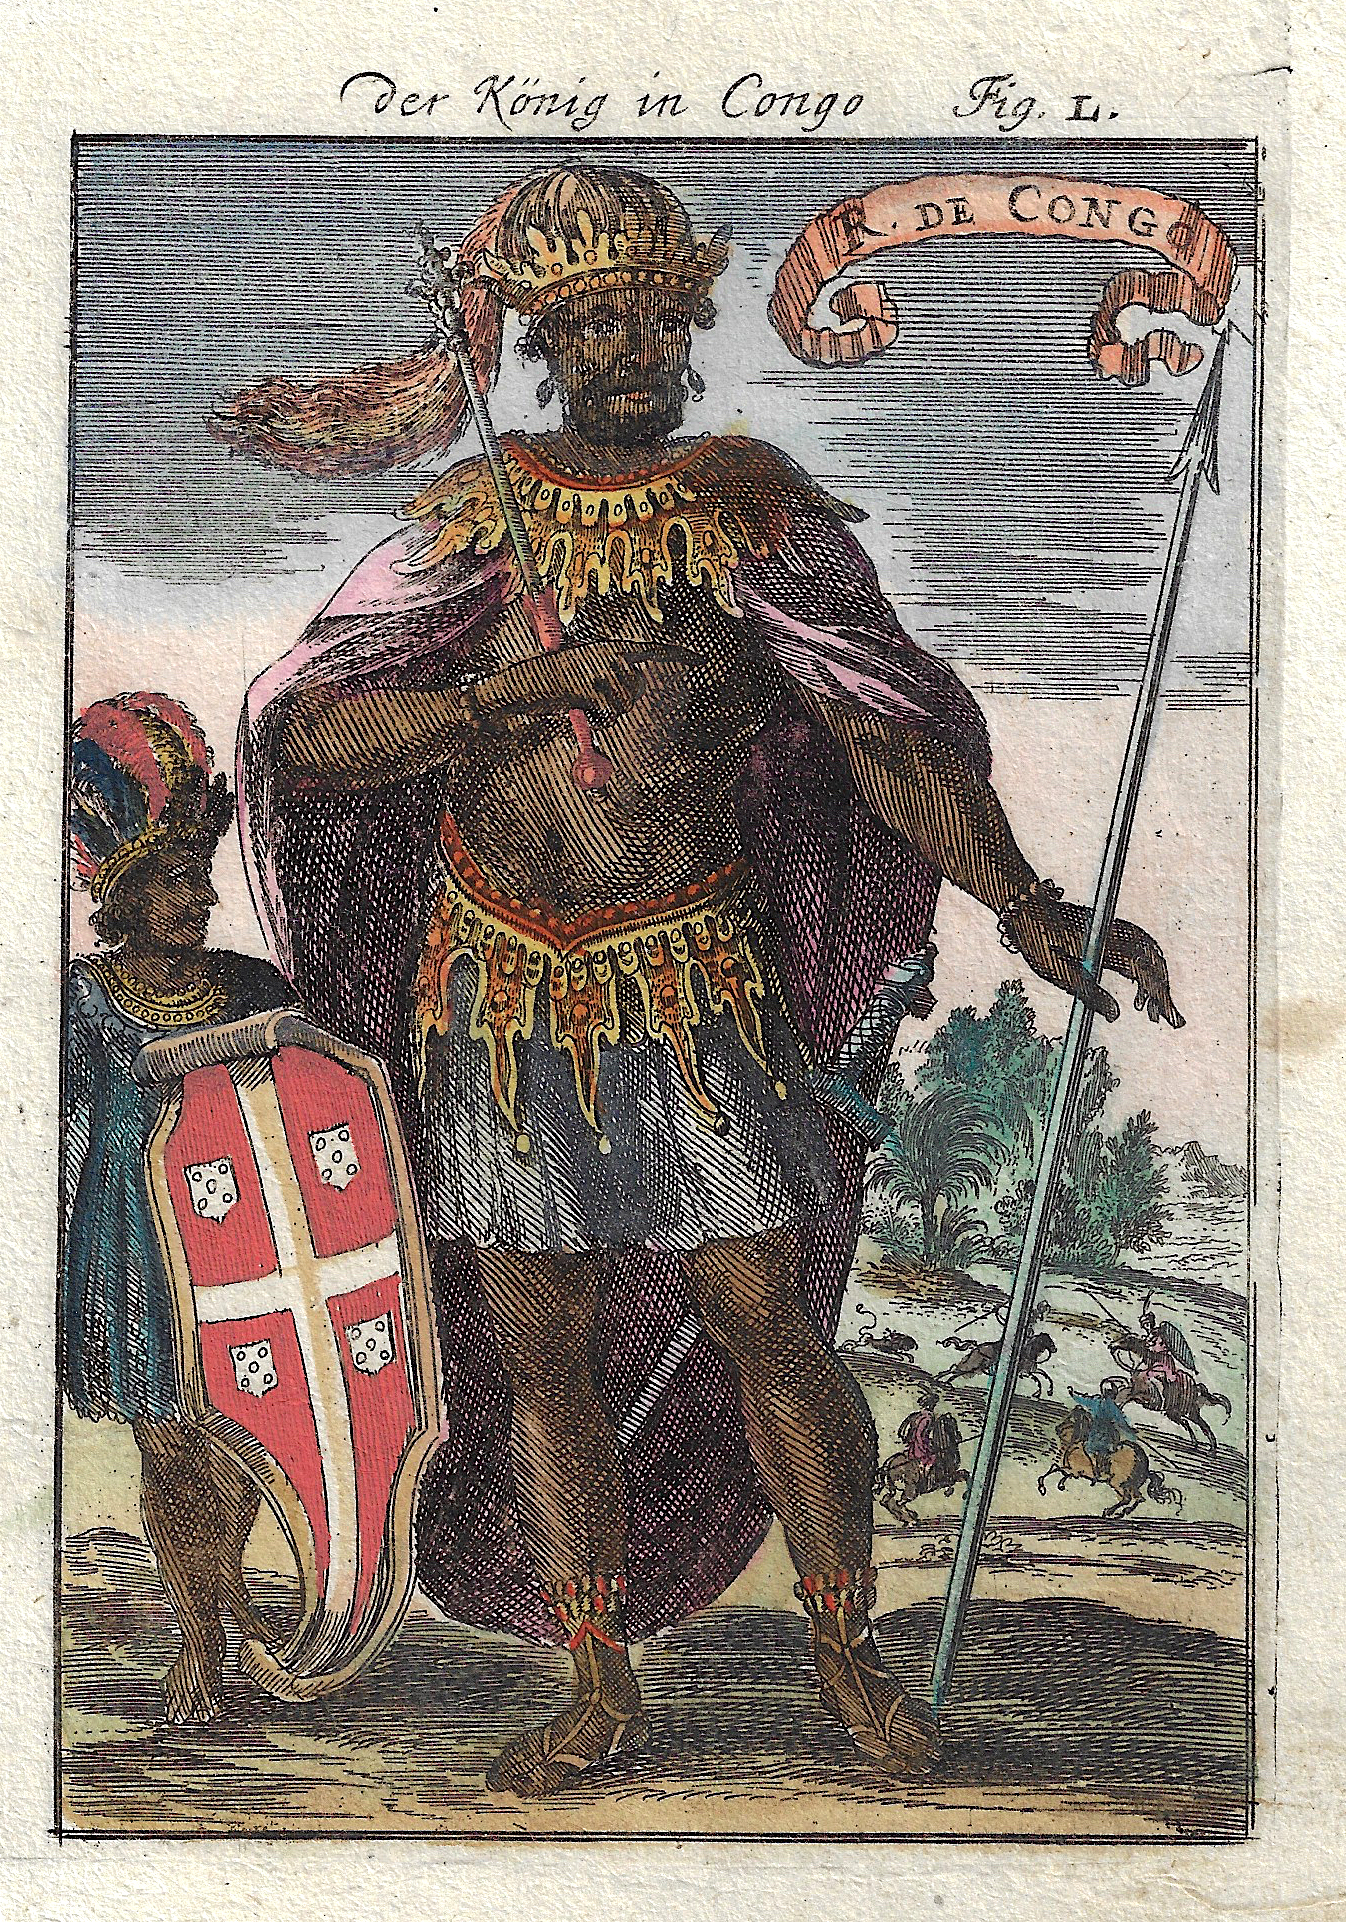 Mallet  Der König in Congo Fig. L. / R. de Congo